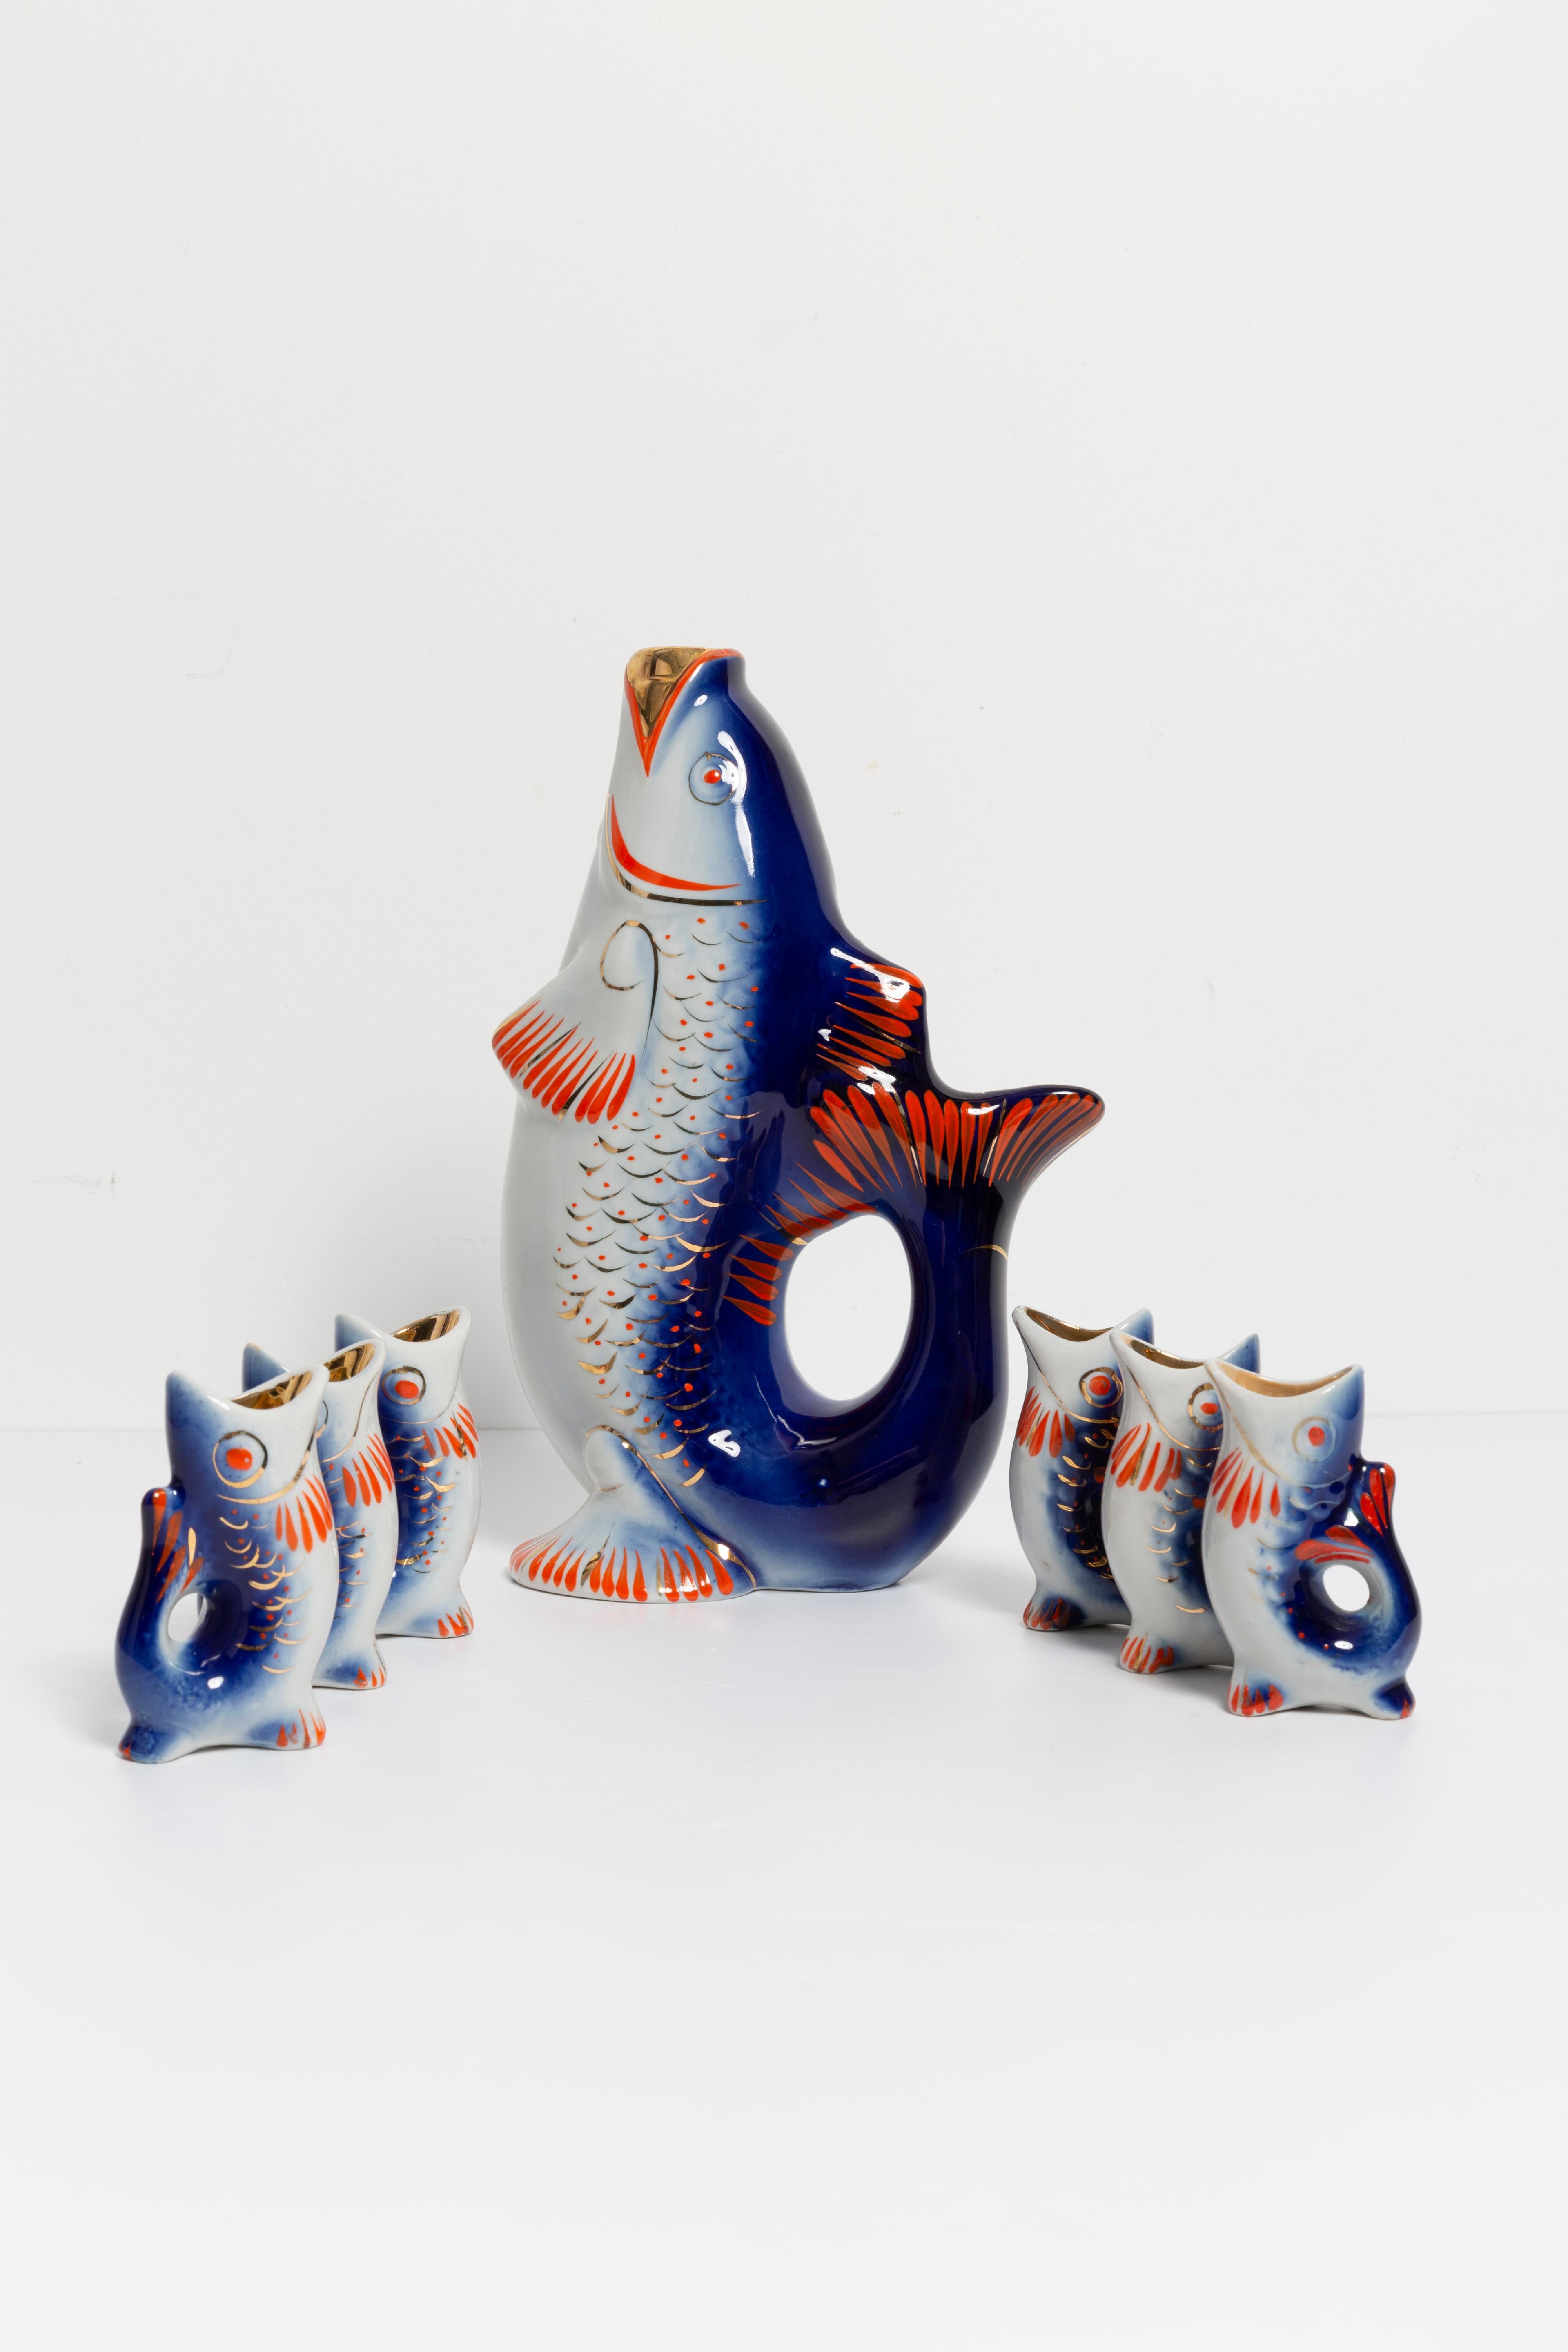 Erstaunliche Reihe von Fischen in blauer Farbe, die von einem der Glasmanufaktur mit Sitz in Polen. Das wäre eine tolle Ergänzung für jede Sammlung! Sehr guter Originalzustand. Absolut schöne Dekoration. Abmessungen der Gläser: 5x3, Höhe 8cm. Nur